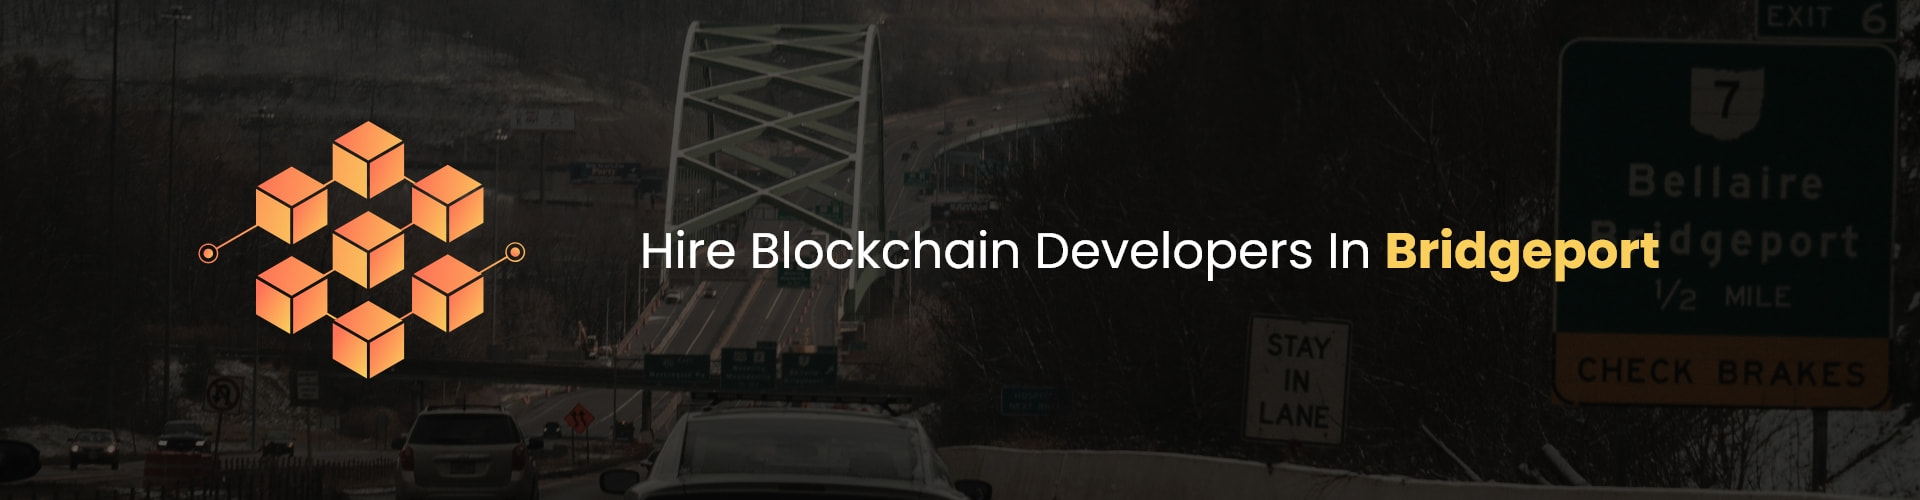 hire blockchain developers in bridgeport